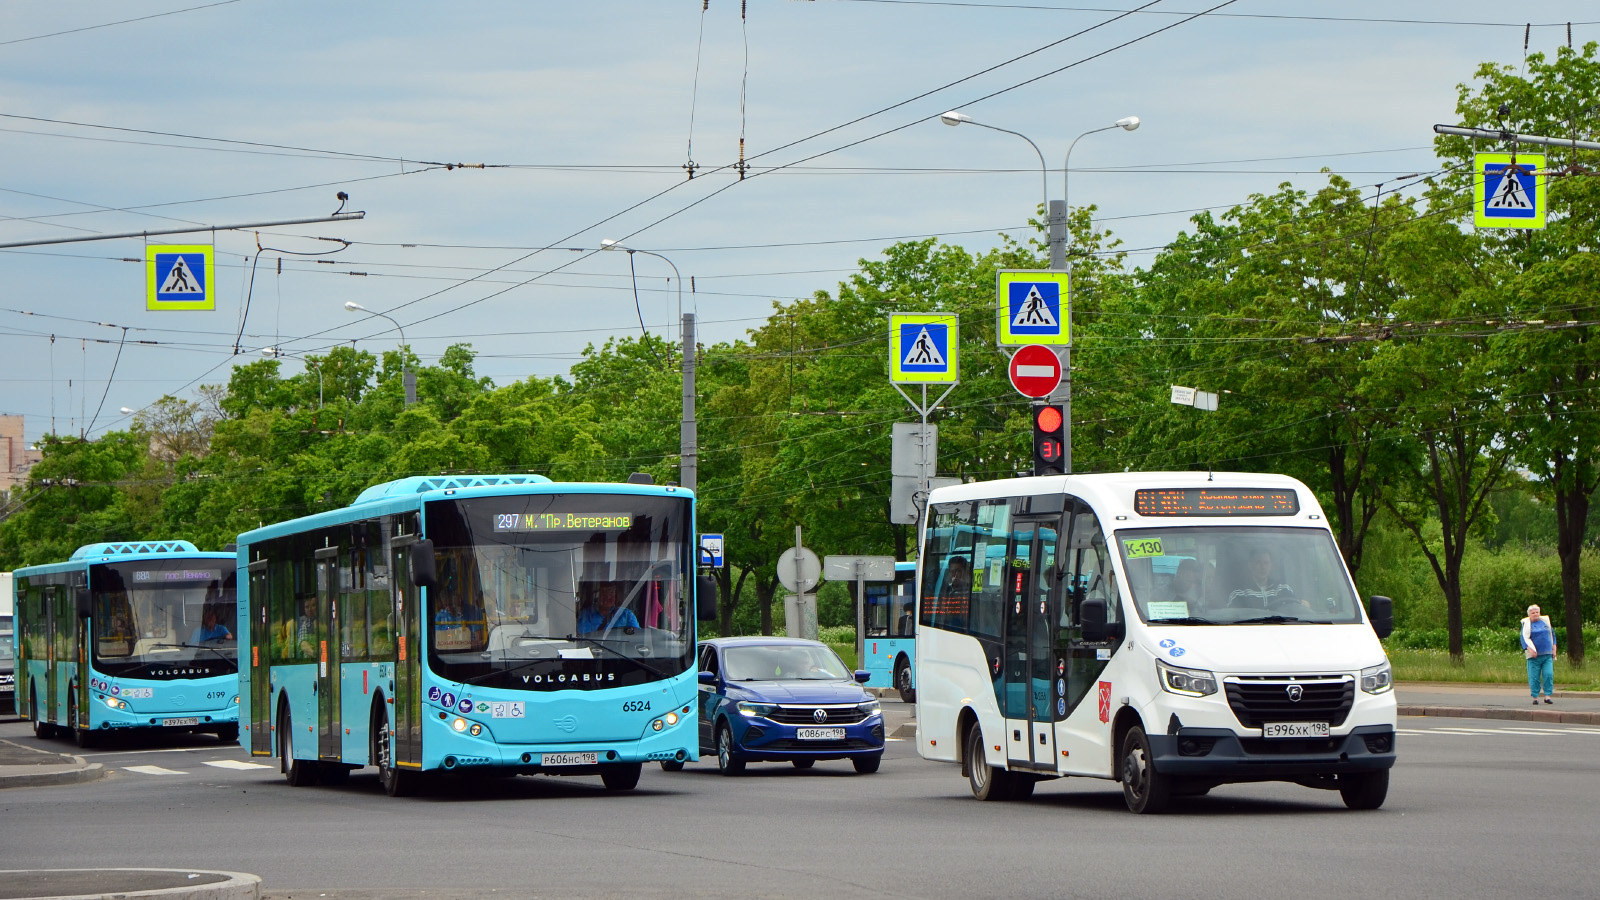 Saint Petersburg, Volgabus-5270.G2 (LNG) # 6524; Saint Petersburg, GAZ-A68R52 City # 49